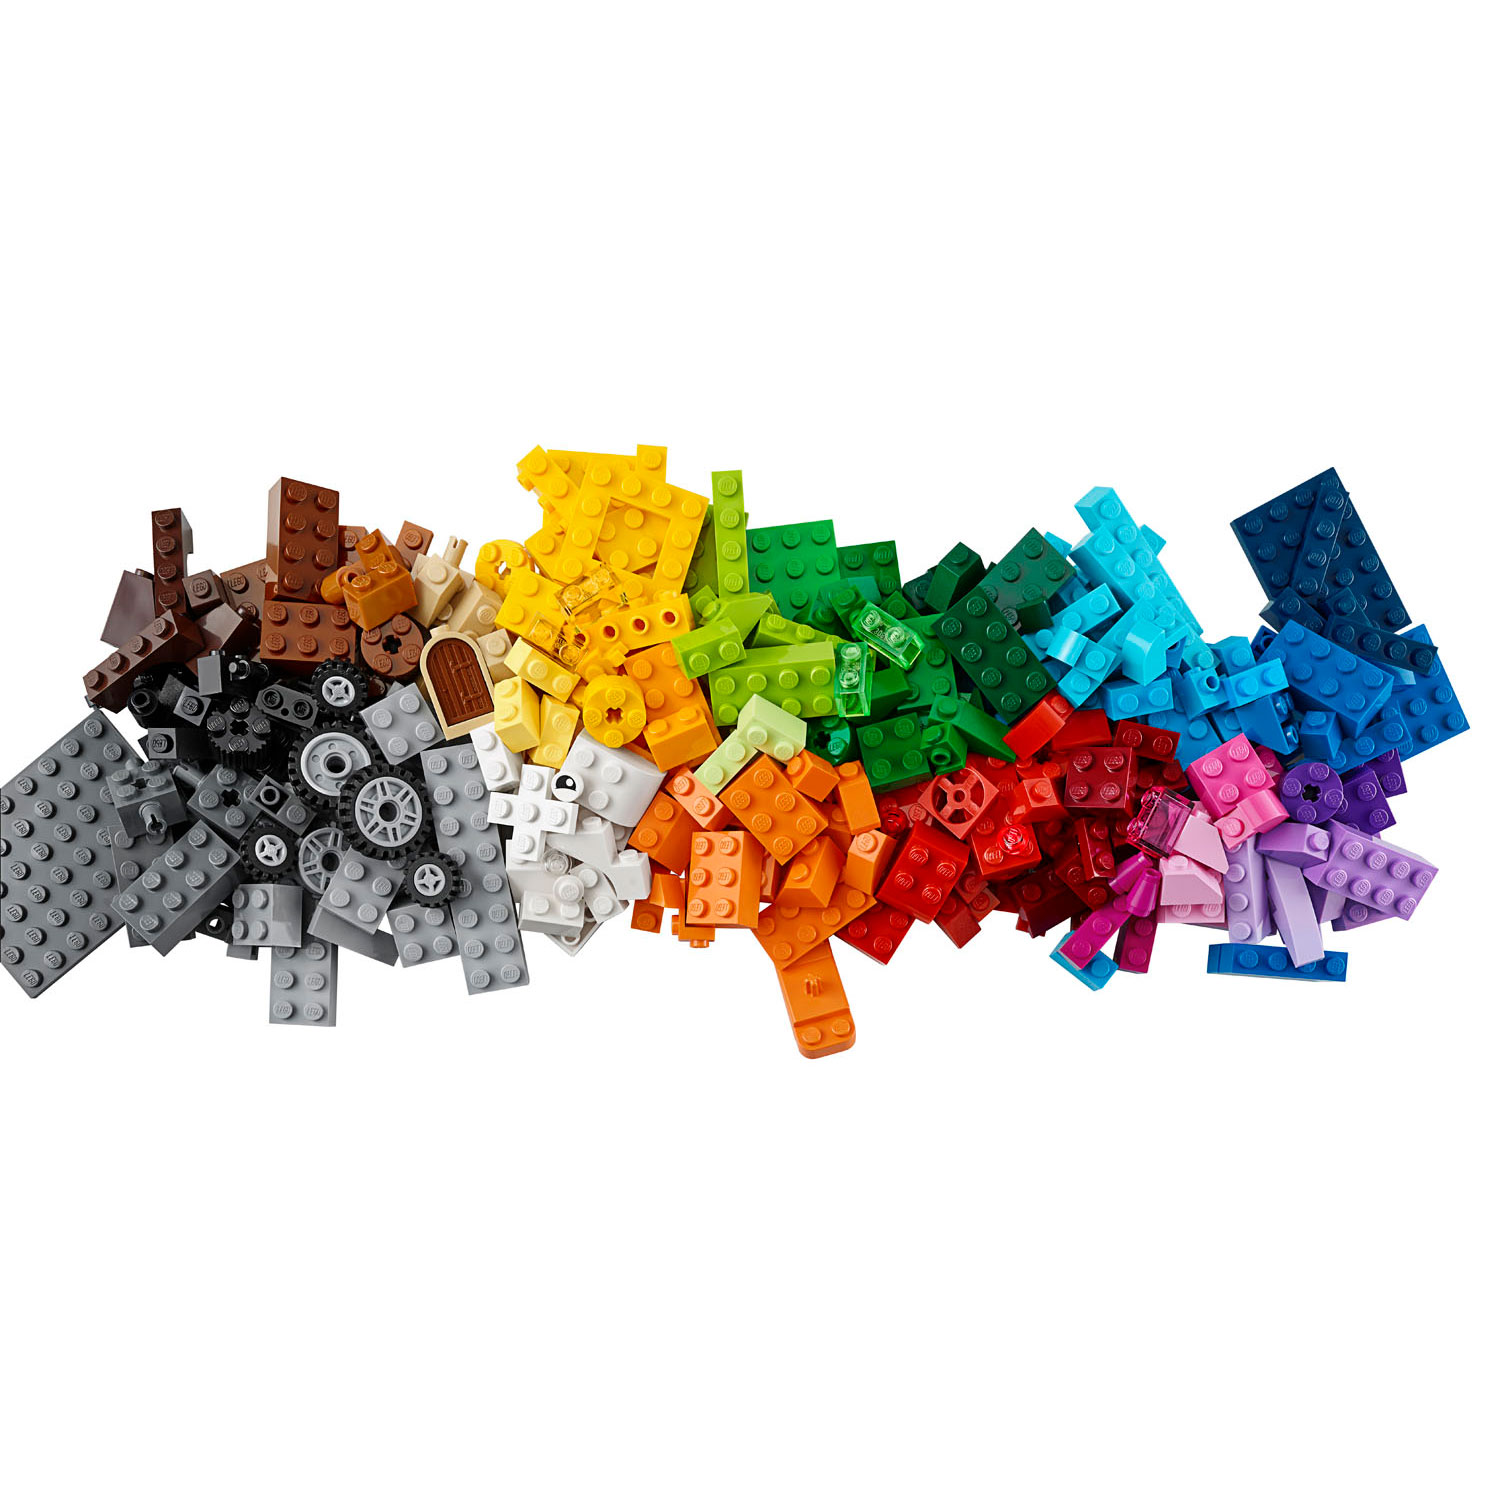 LEGO Classic 10696 Boîte de rangement créative